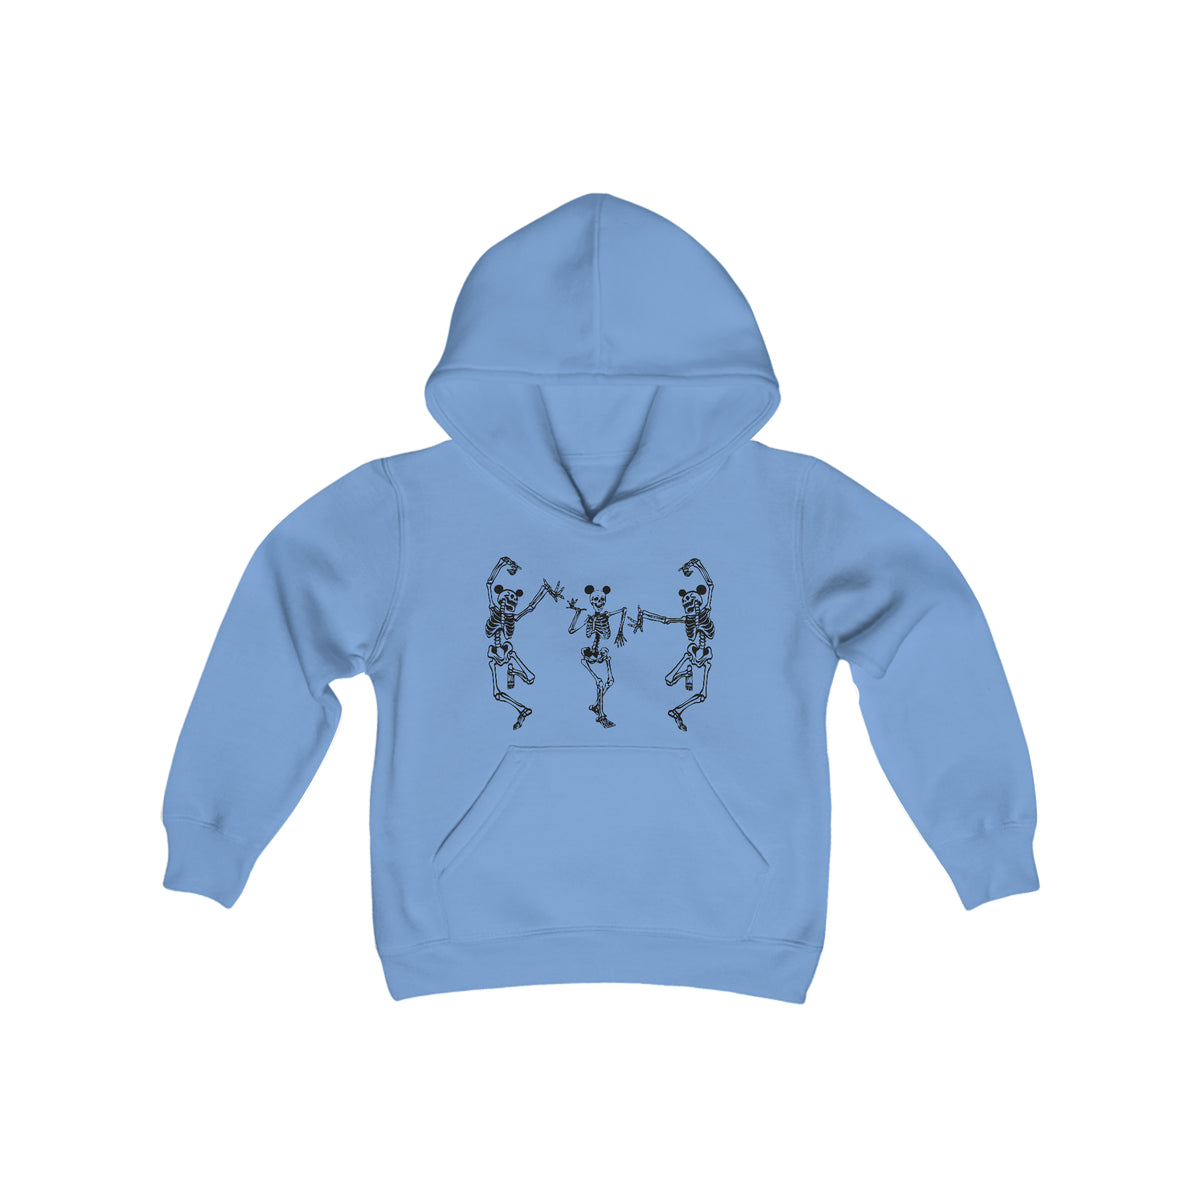 Dancing Skeletons with Ears Gildan Youth Heavy Blend Hooded Sweatshirt